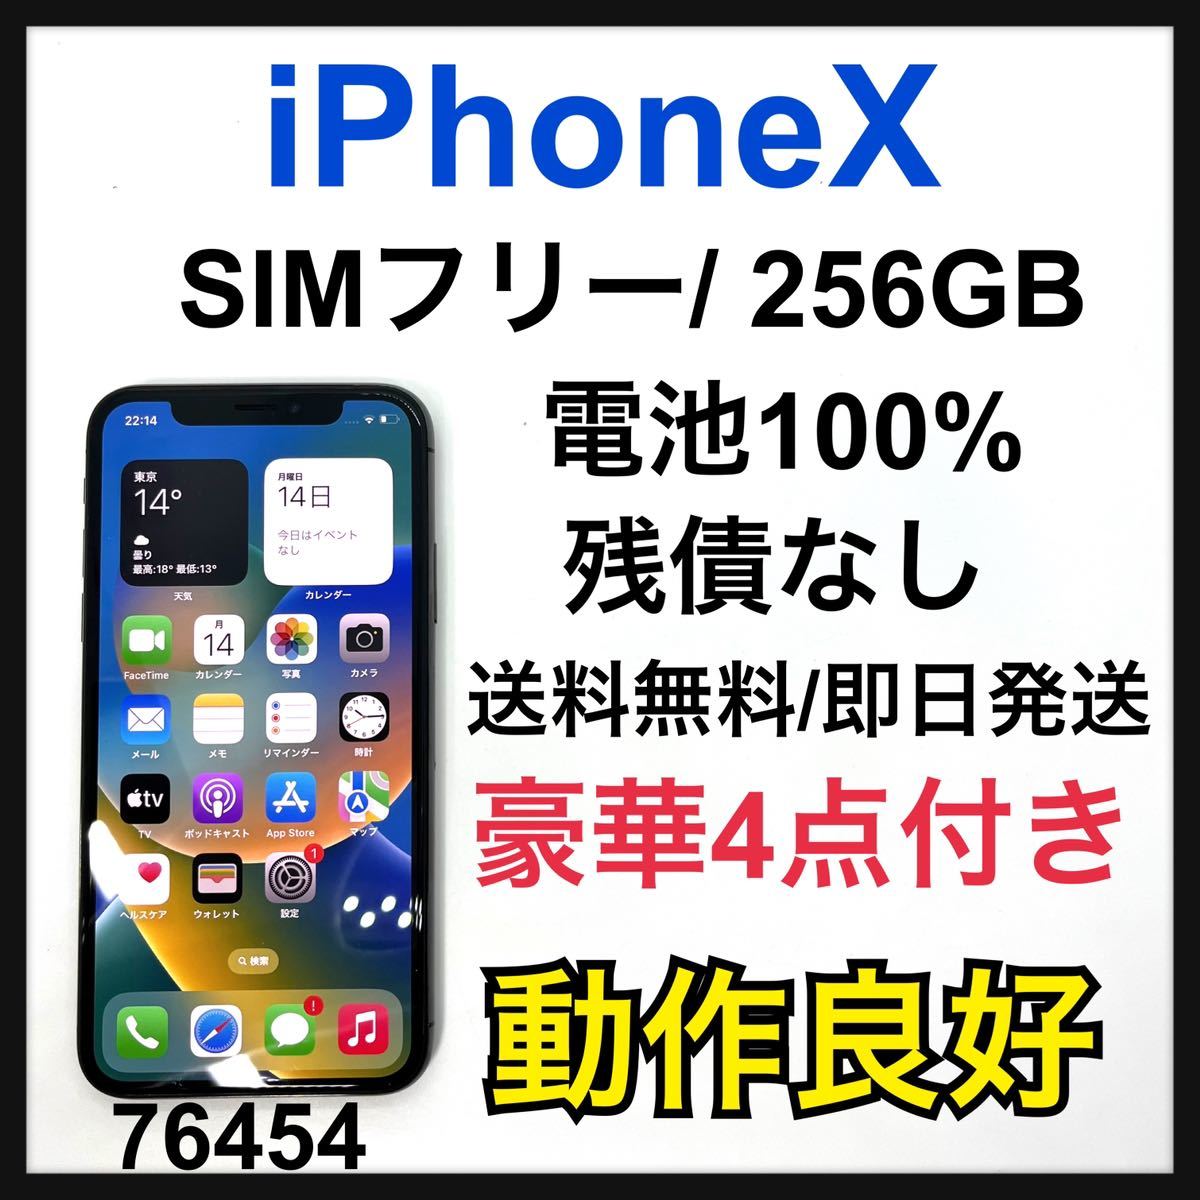 100% iPhone X Silver 256 GB SIMフリー 本体 スマホ スマホ www